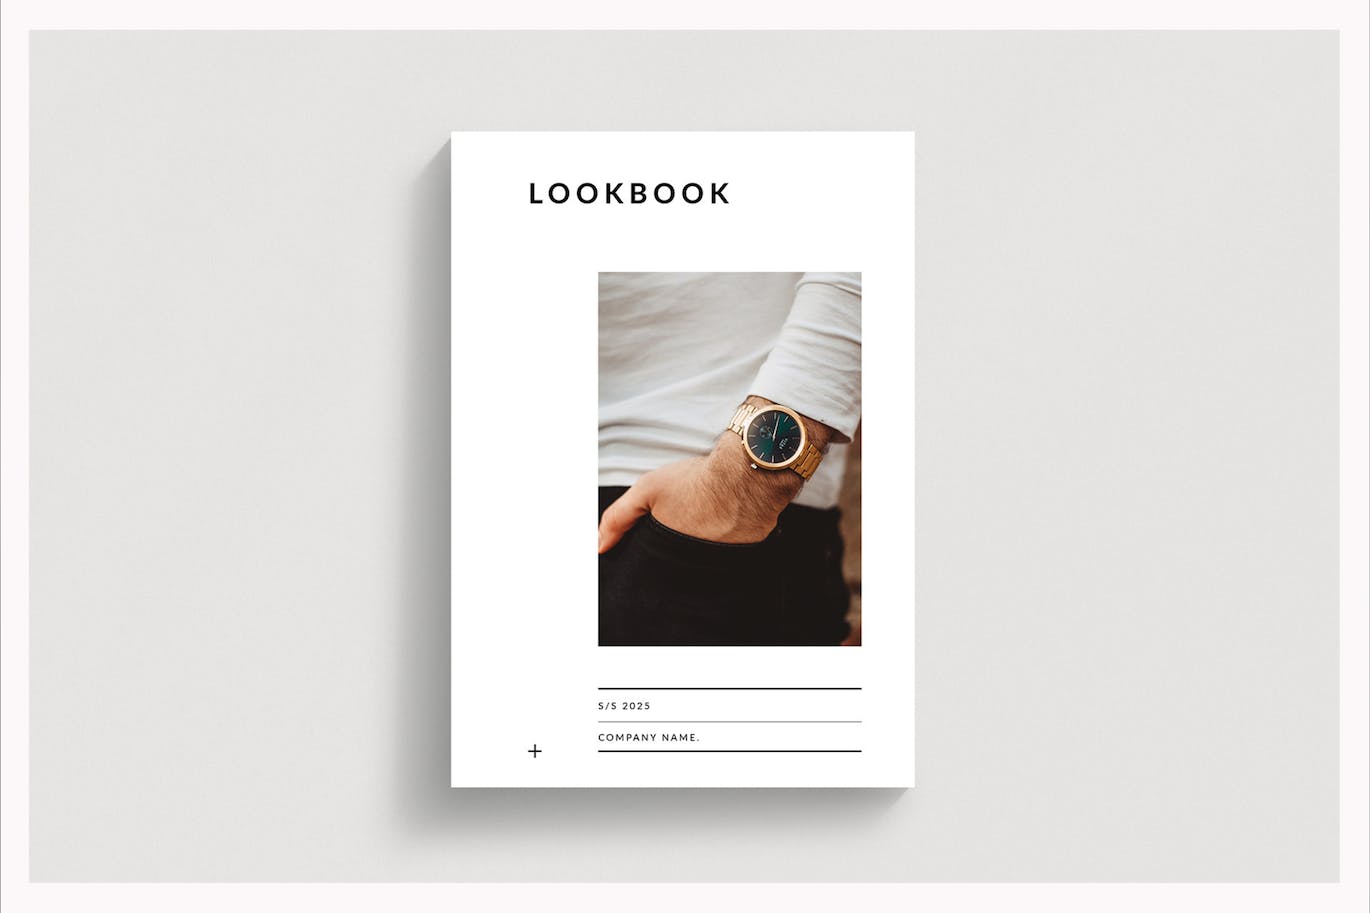 时尚品牌小册子Lookbook模板 LookBook Template 设计素材 第1张